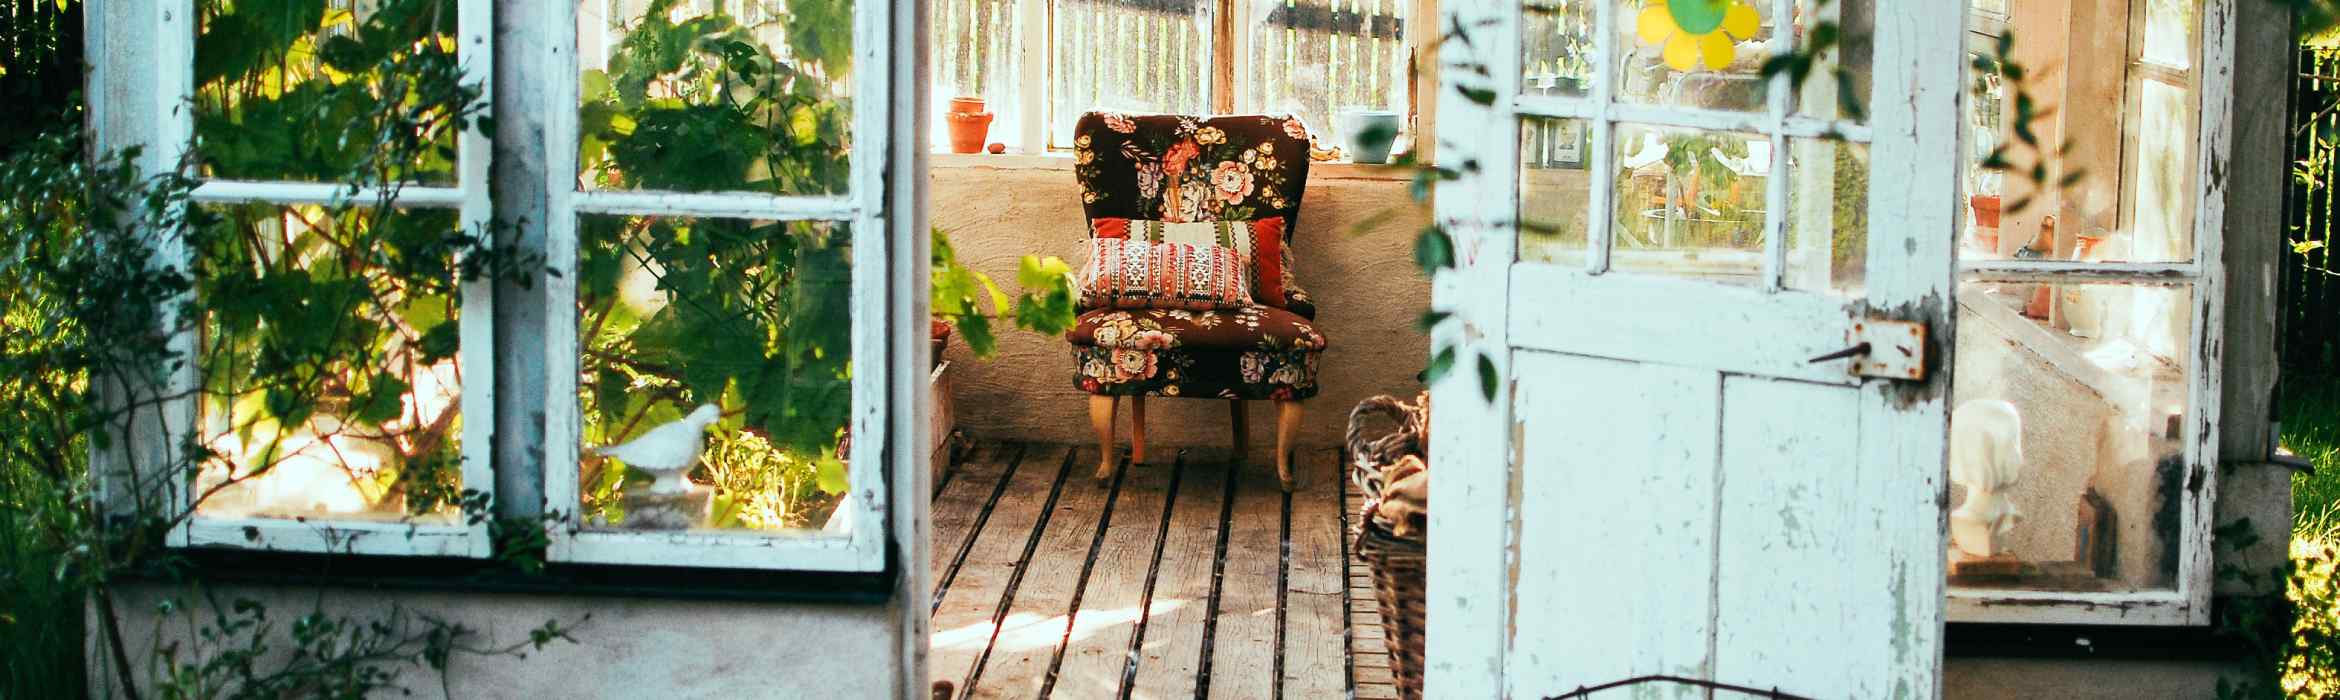 Slimmer werken summerread - Tuinhuisje met groene planten en vintage stoel